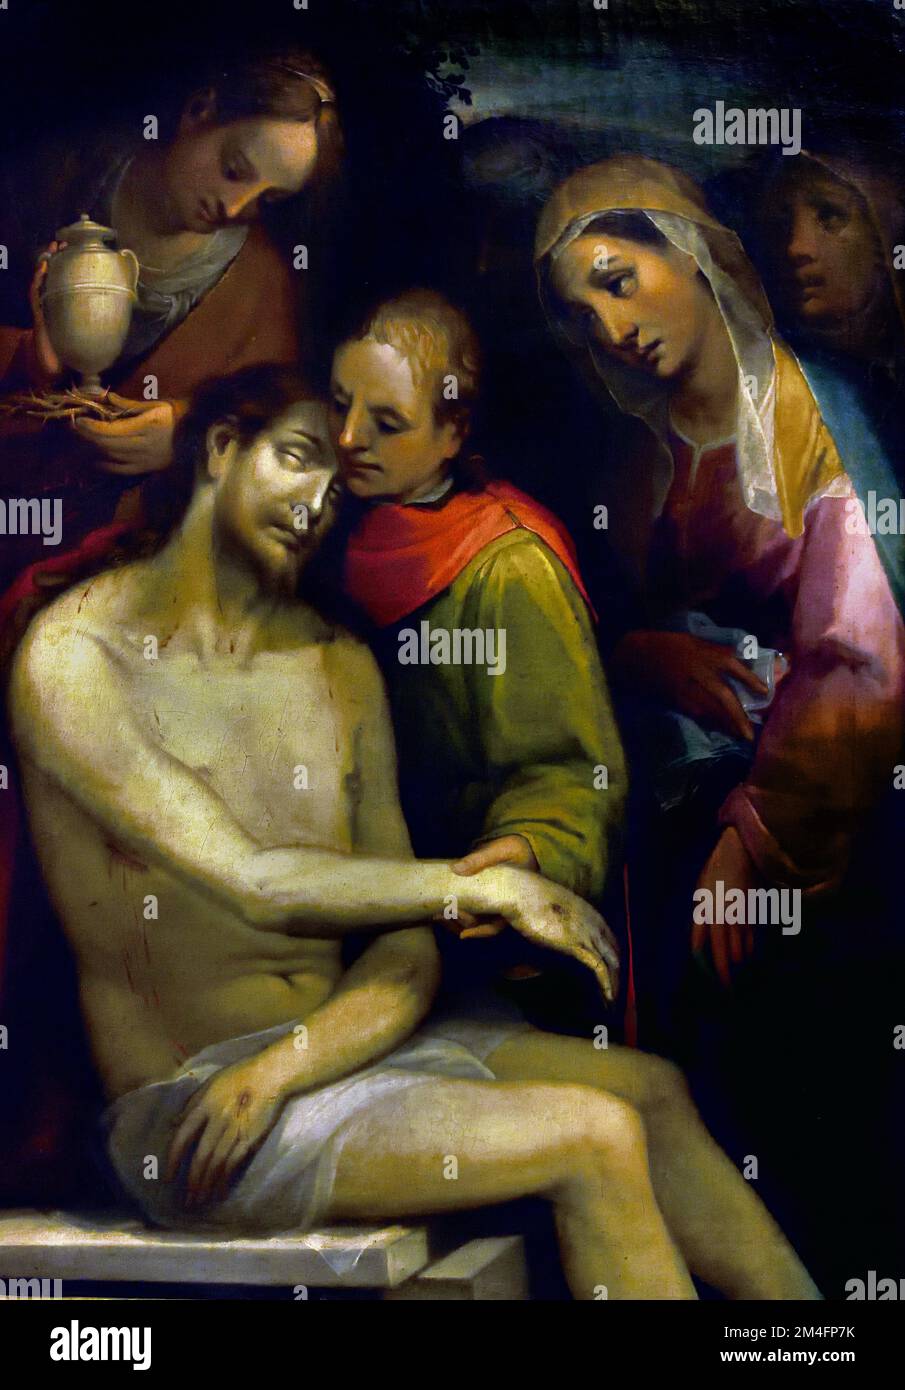 Pietà, Vincenzo Rustici - Siena,1557-1632 Christliche Kunst, Italien, Italienisch. Pieta, die Jungfrau Maria, die sie hält und trauert, der Leib Jesu, Maria die Mutter, die trauert, der Leib Jesu, nach der Kreuzigung, Stockfoto